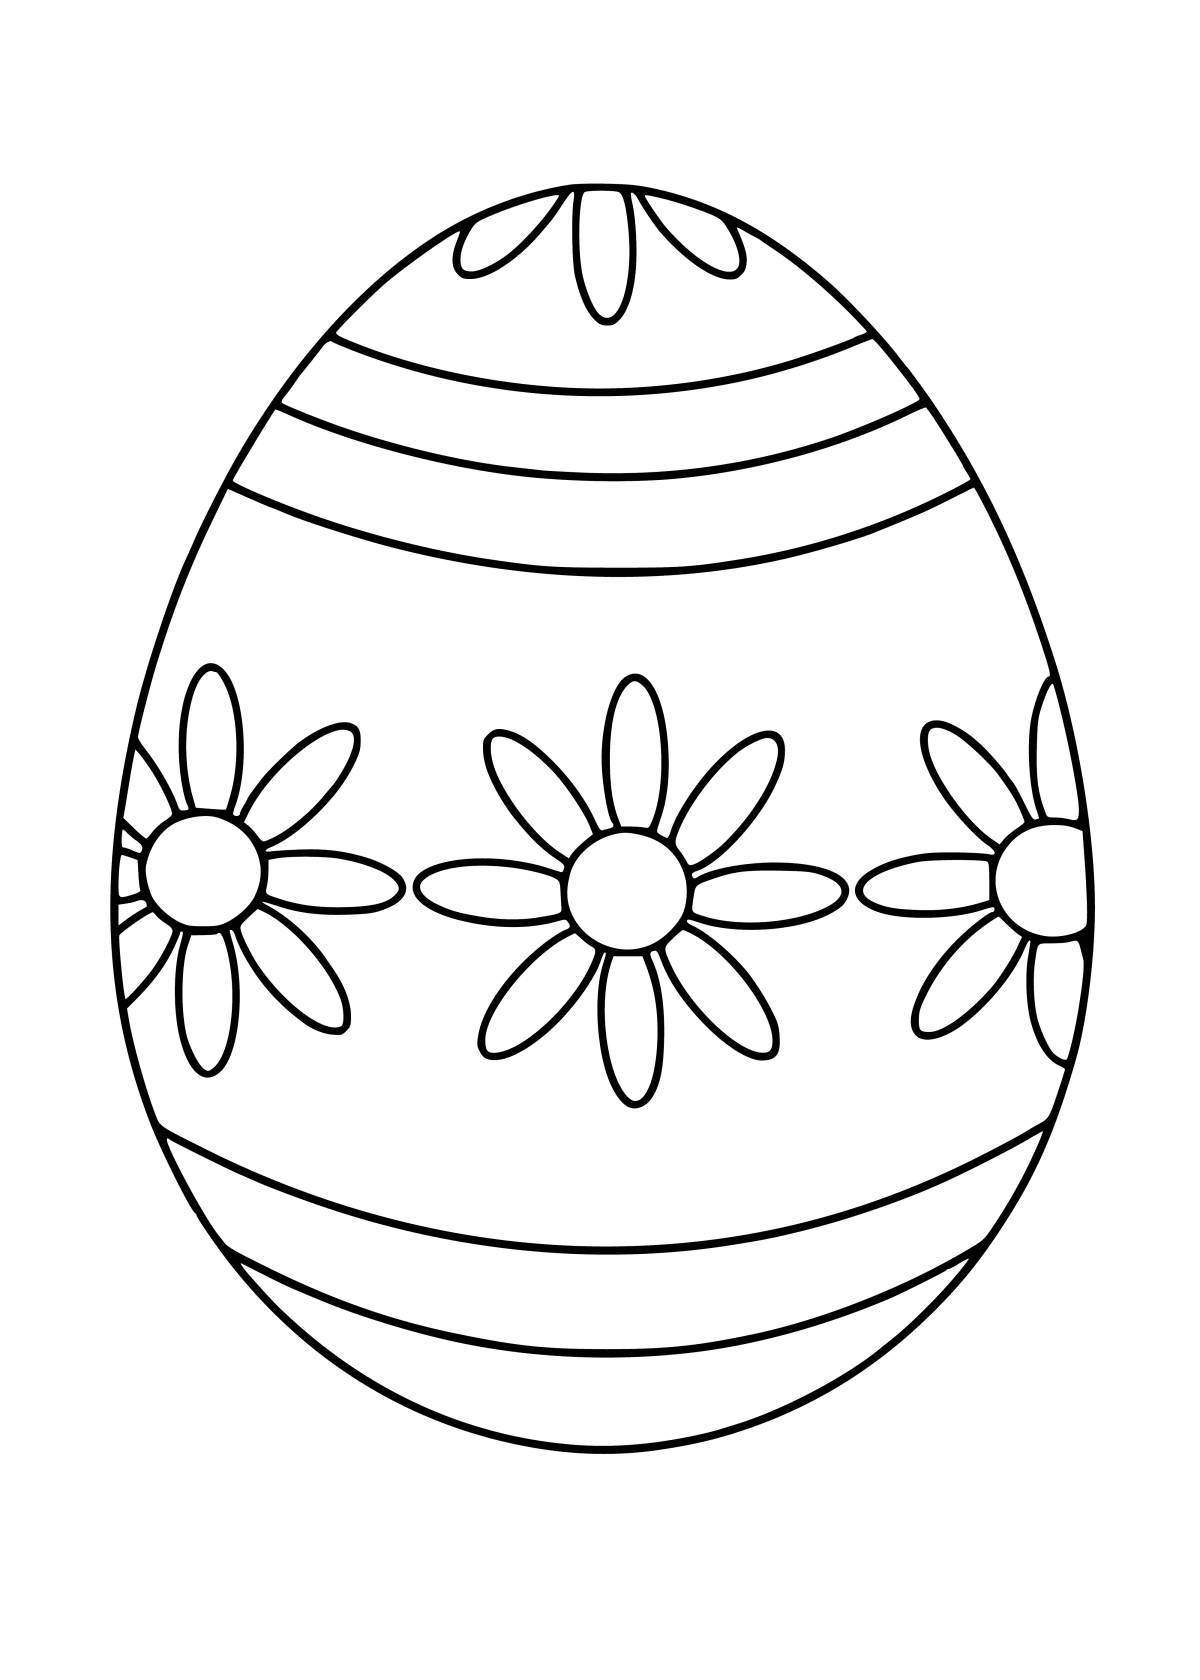 Красочная страница раскраски яиц для детей